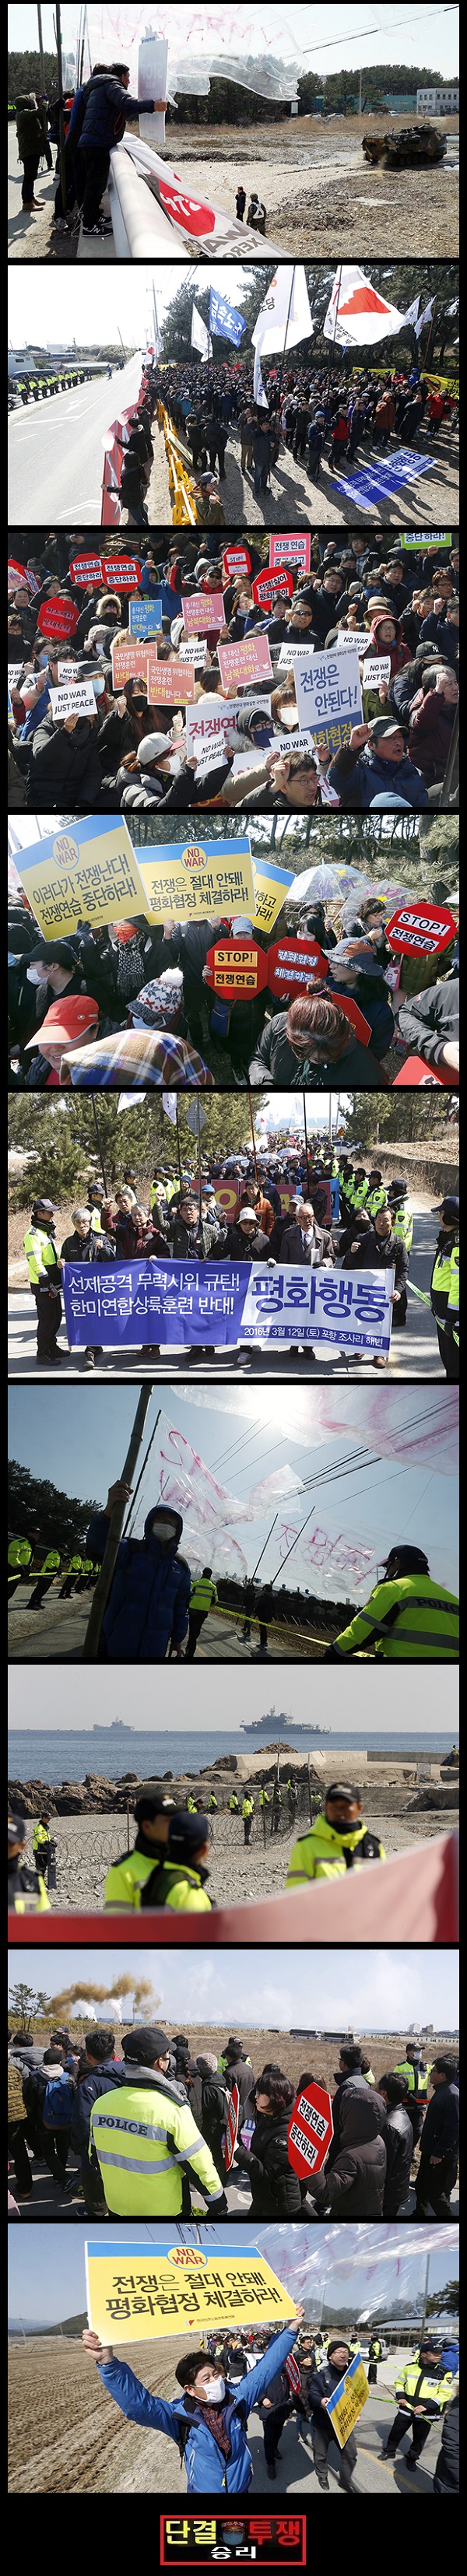 Güney Kore: ABD İle Yürütülen Savaş Oyunlarına Karşı Protesto  - FotoHaber